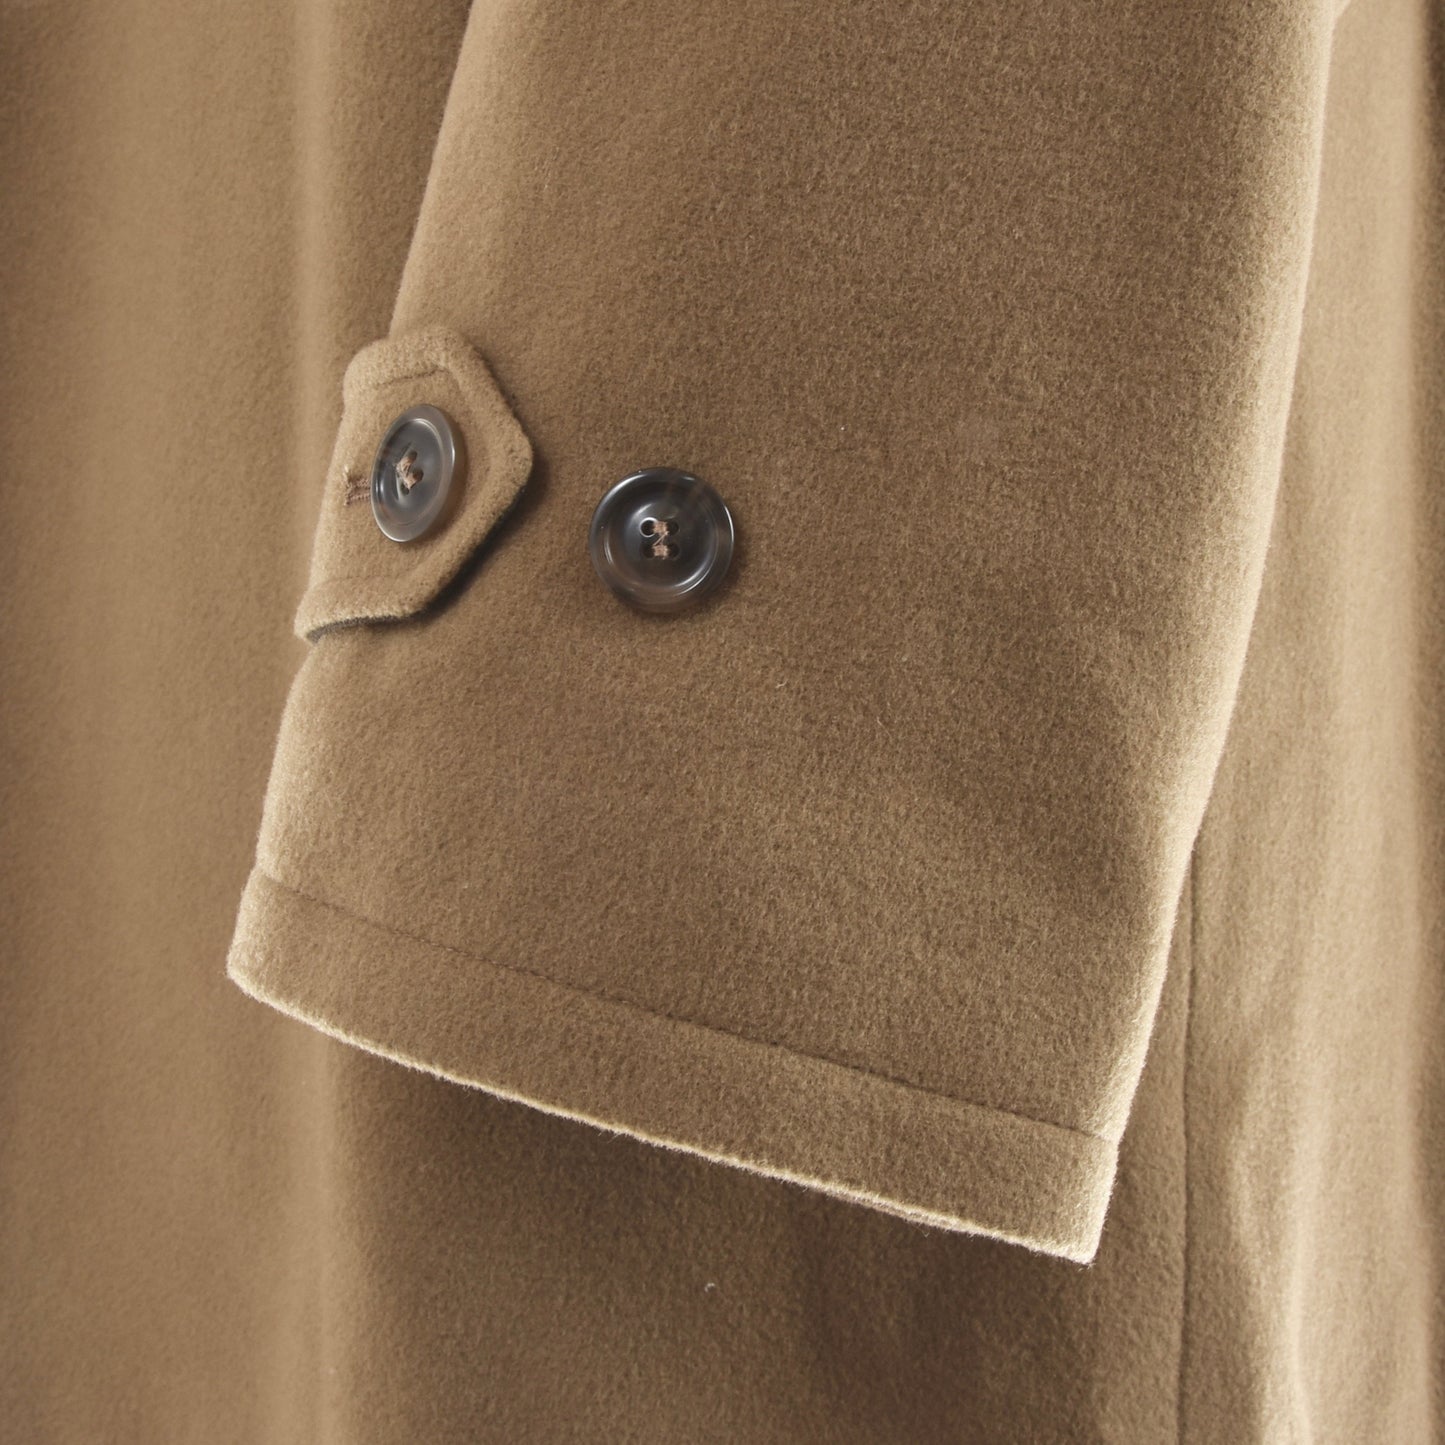 Benny Goodman Wool Overcoat Size 52 - Tan/Beige/Camel